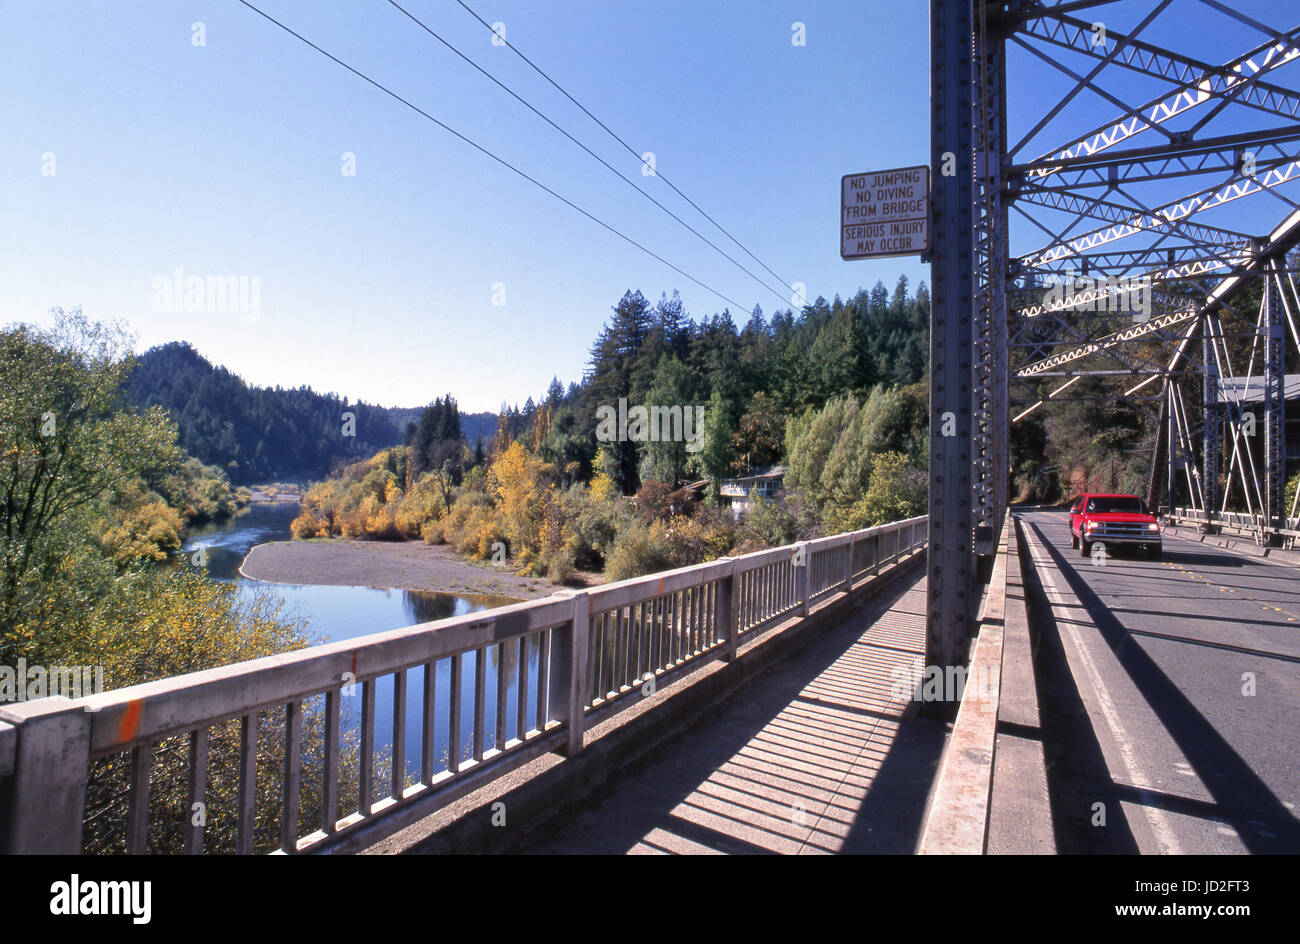 RUSSIAN RIVER CROSSING BRIDGE pont à poutres métalliques Rustique sur la rivière russe américain typique avec camionnette rouge, Sonoma County, California USA Banque D'Images